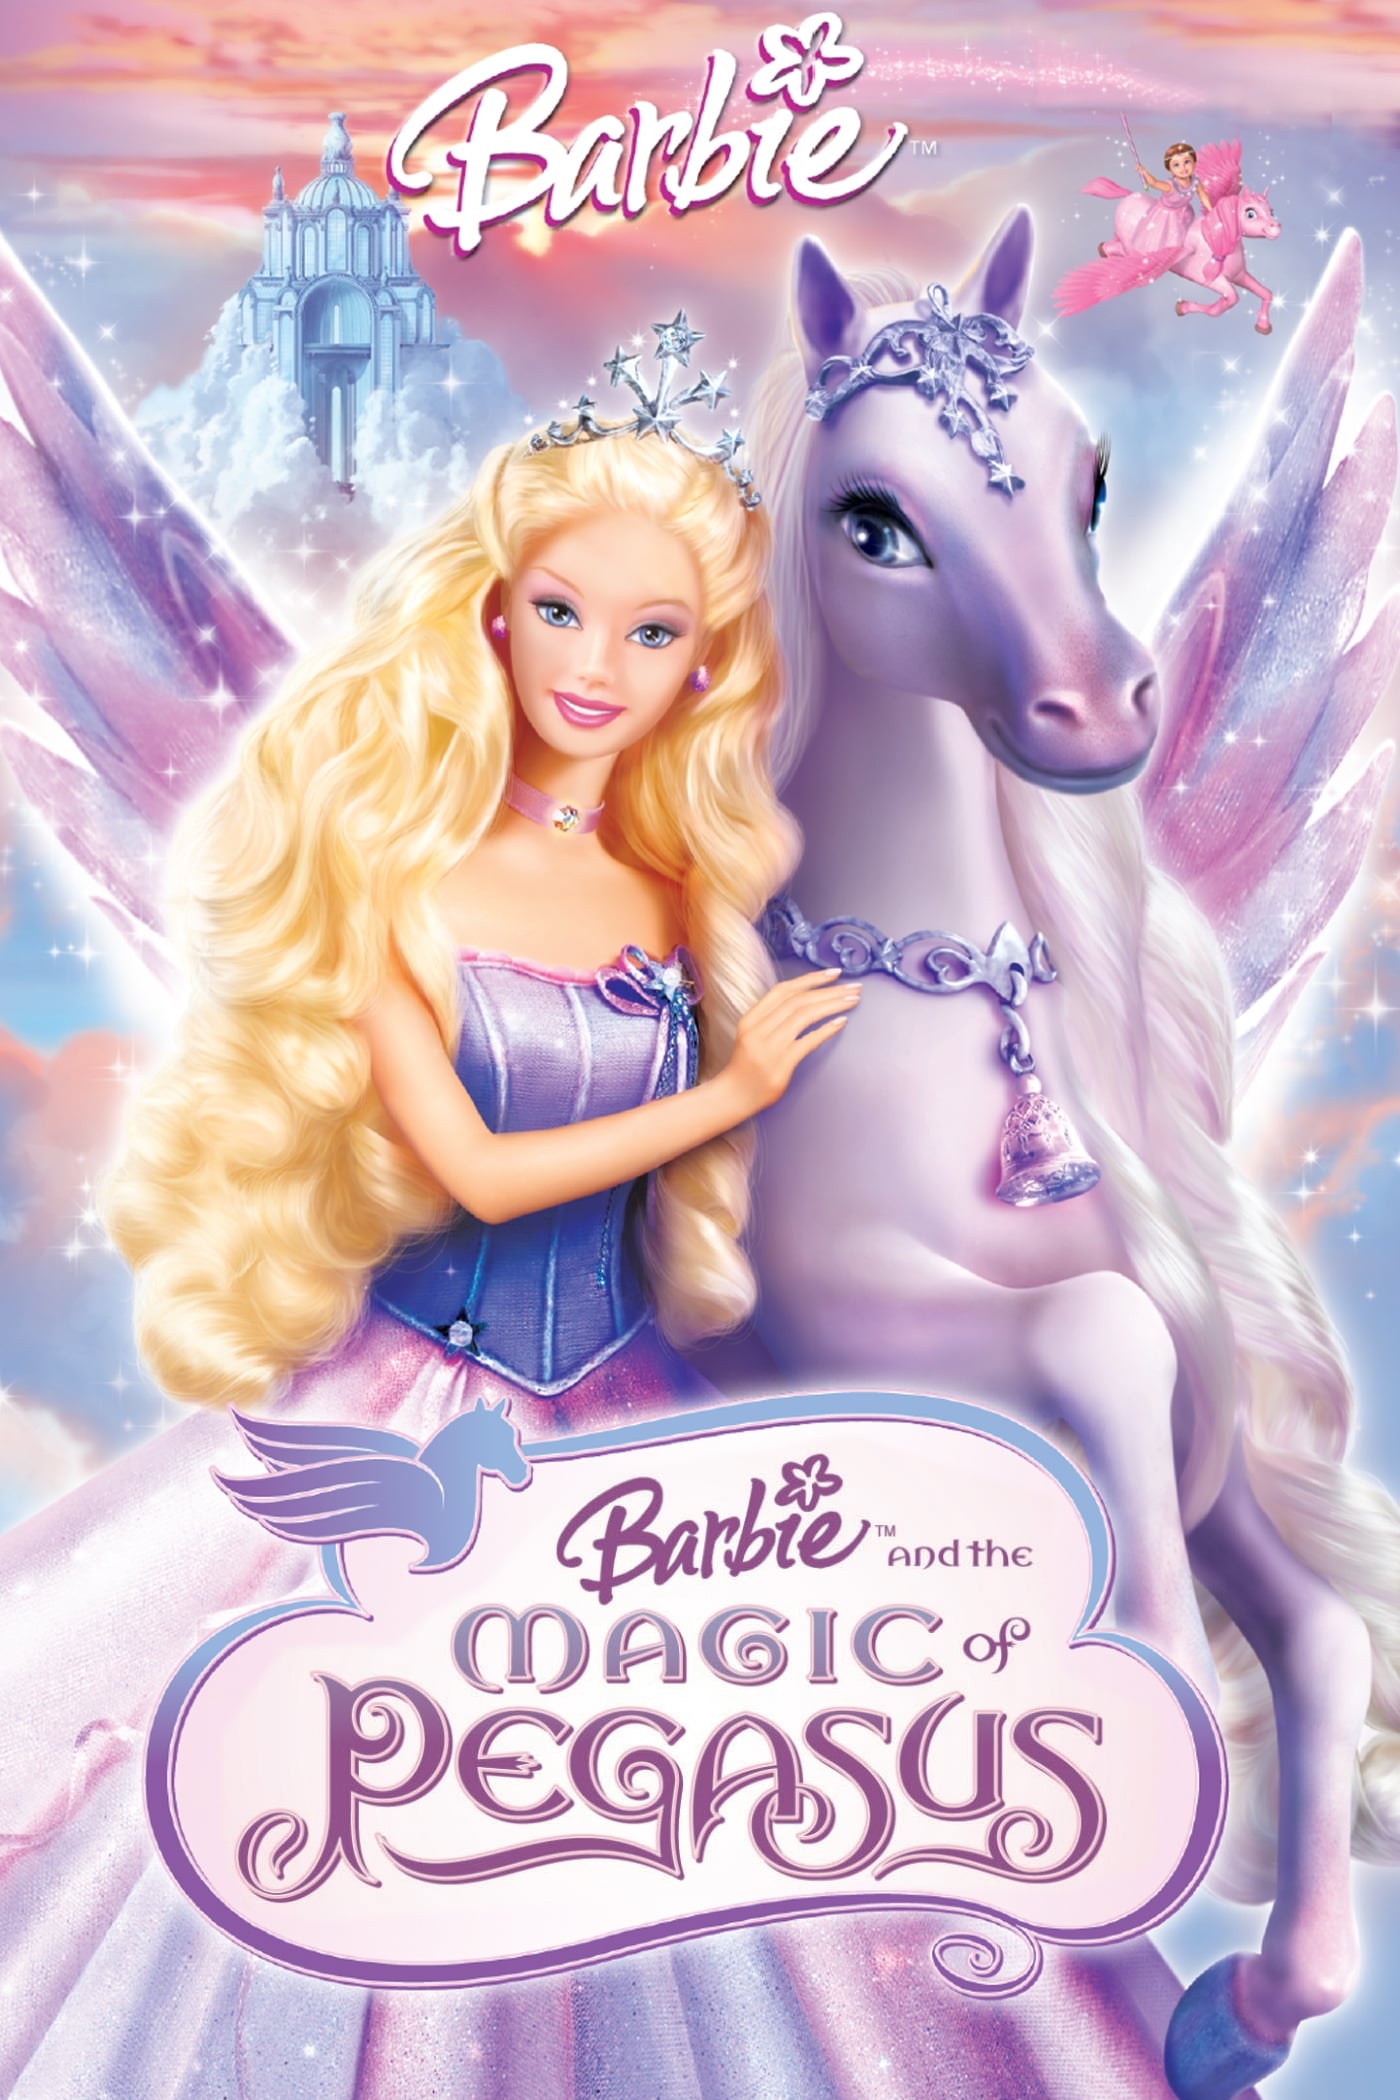 Barbie et le cheval magique (2005)